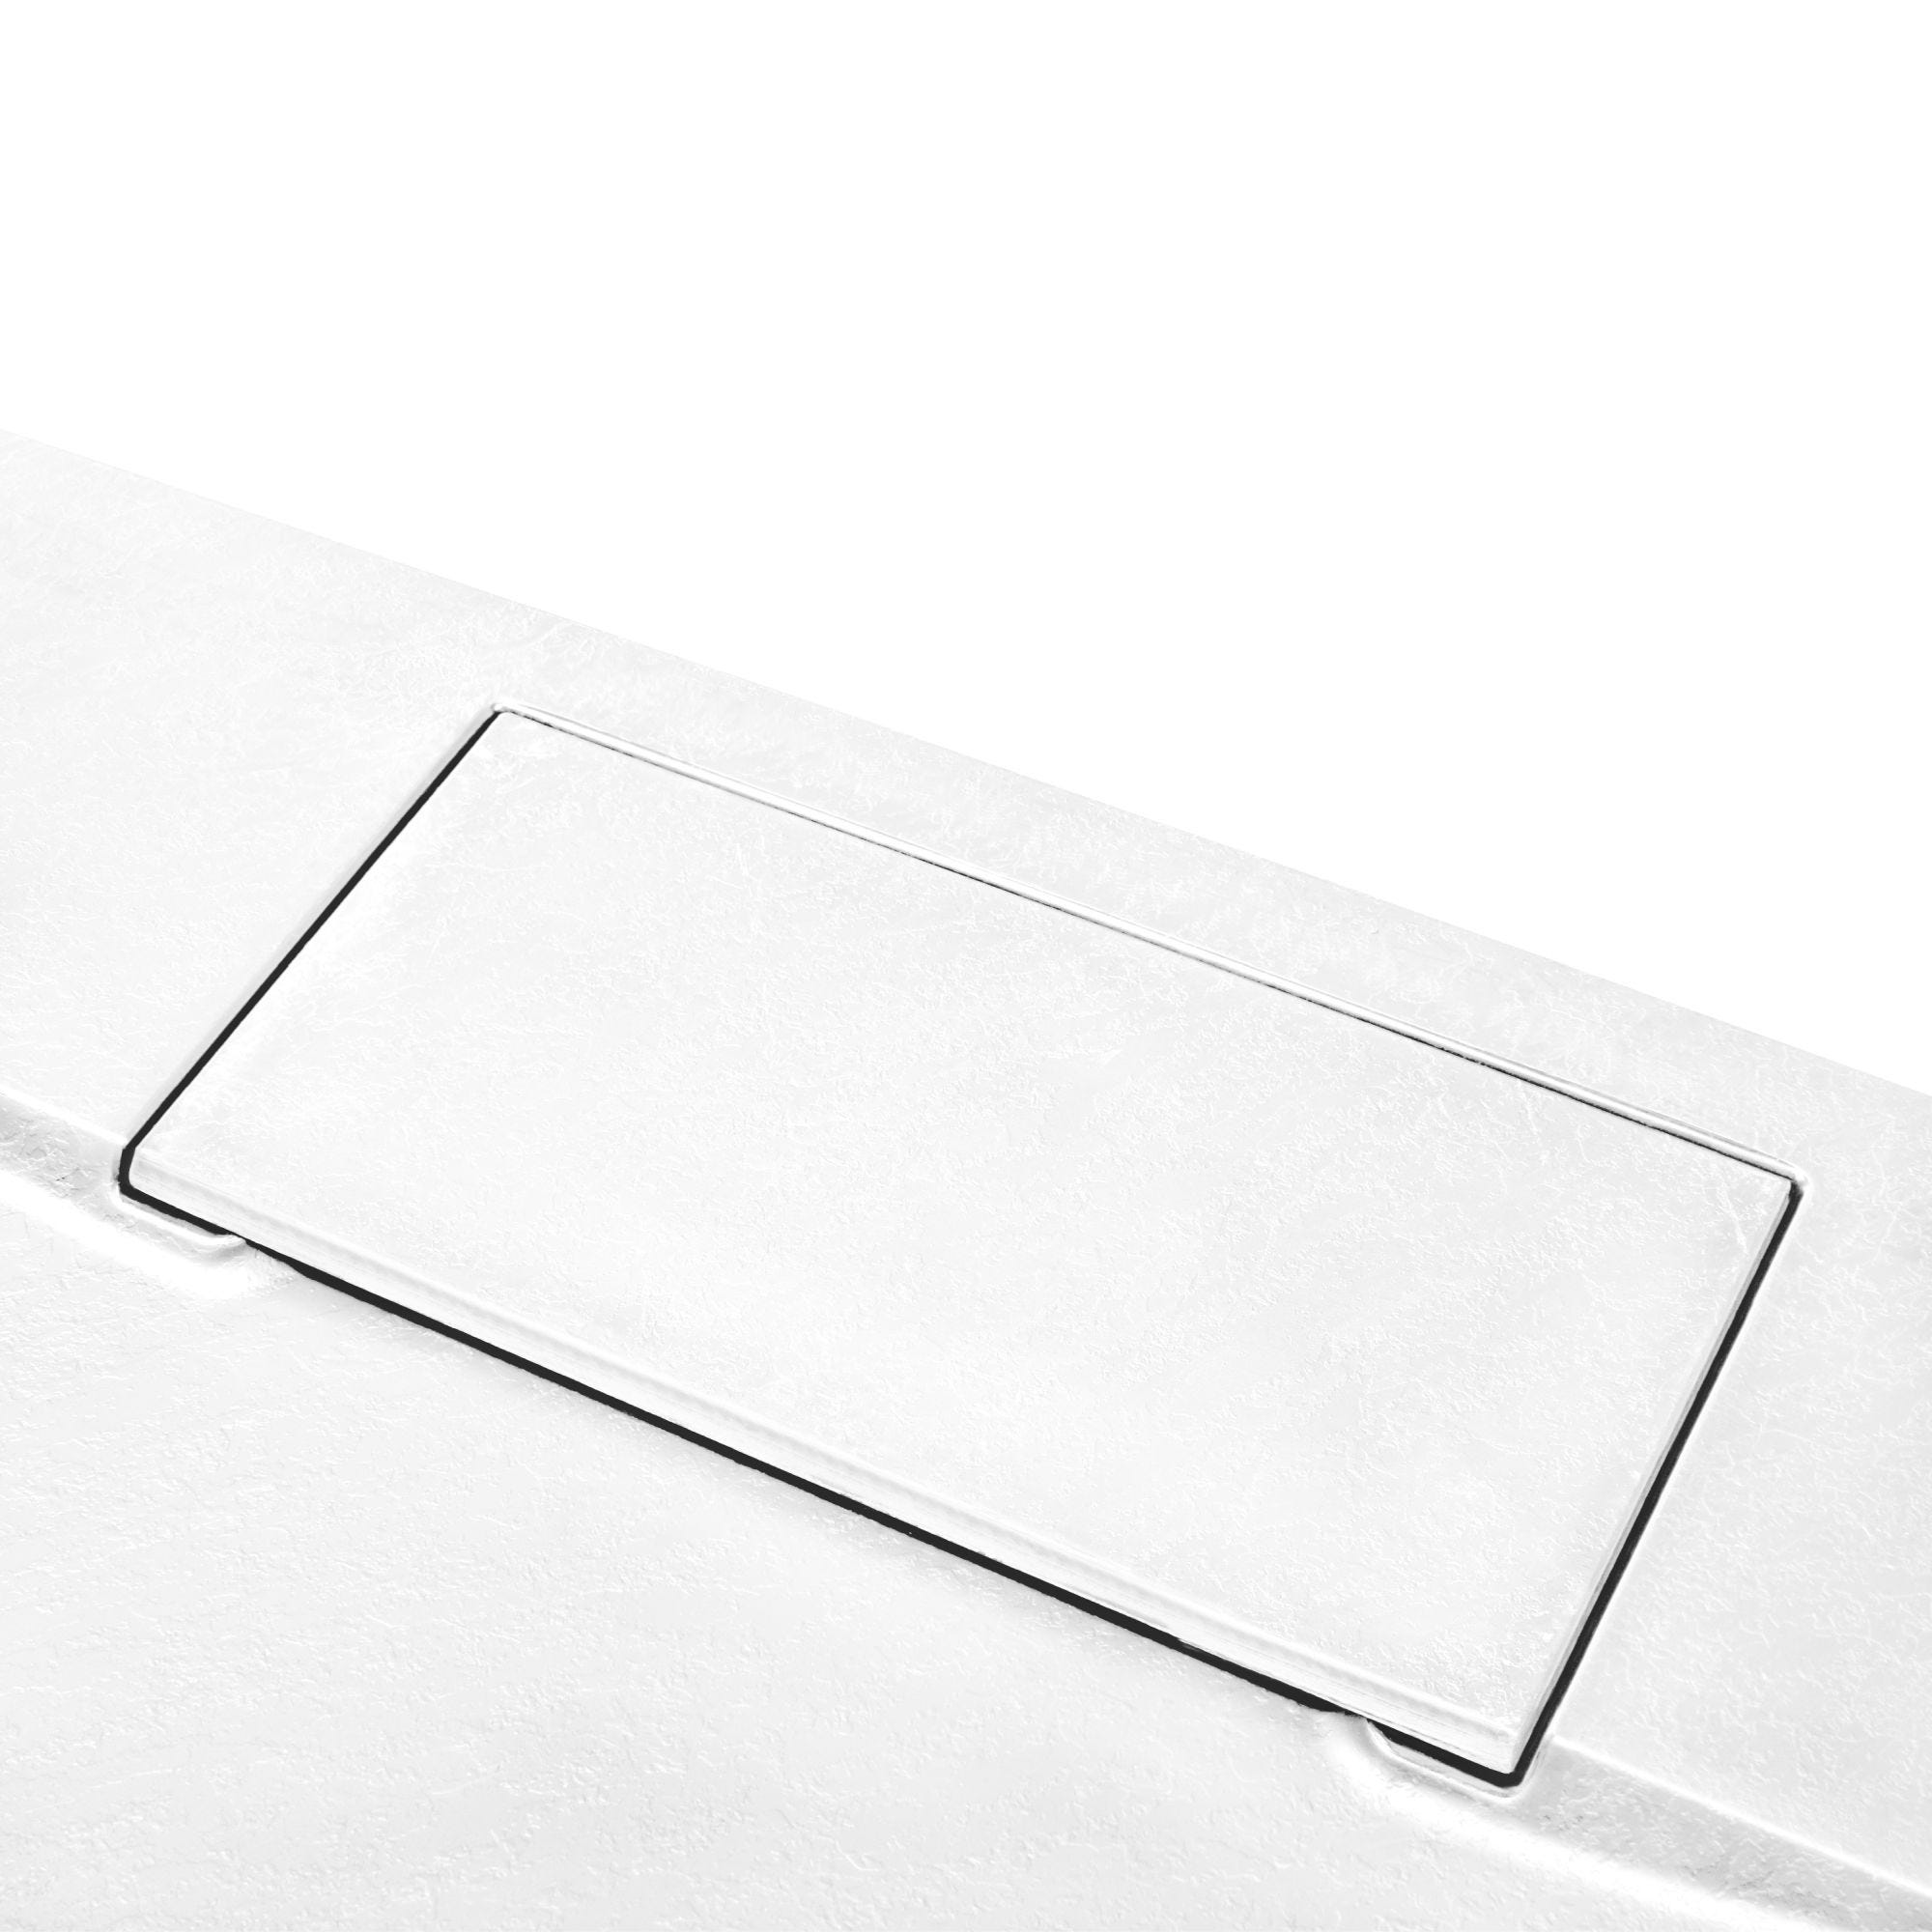 Schulte receveur de douche 90 x 90 x 3,2 cm, blanc effet pierre ultra légers, rectangulaire, extra plat à poser ou à encastrer, bac à douche 4